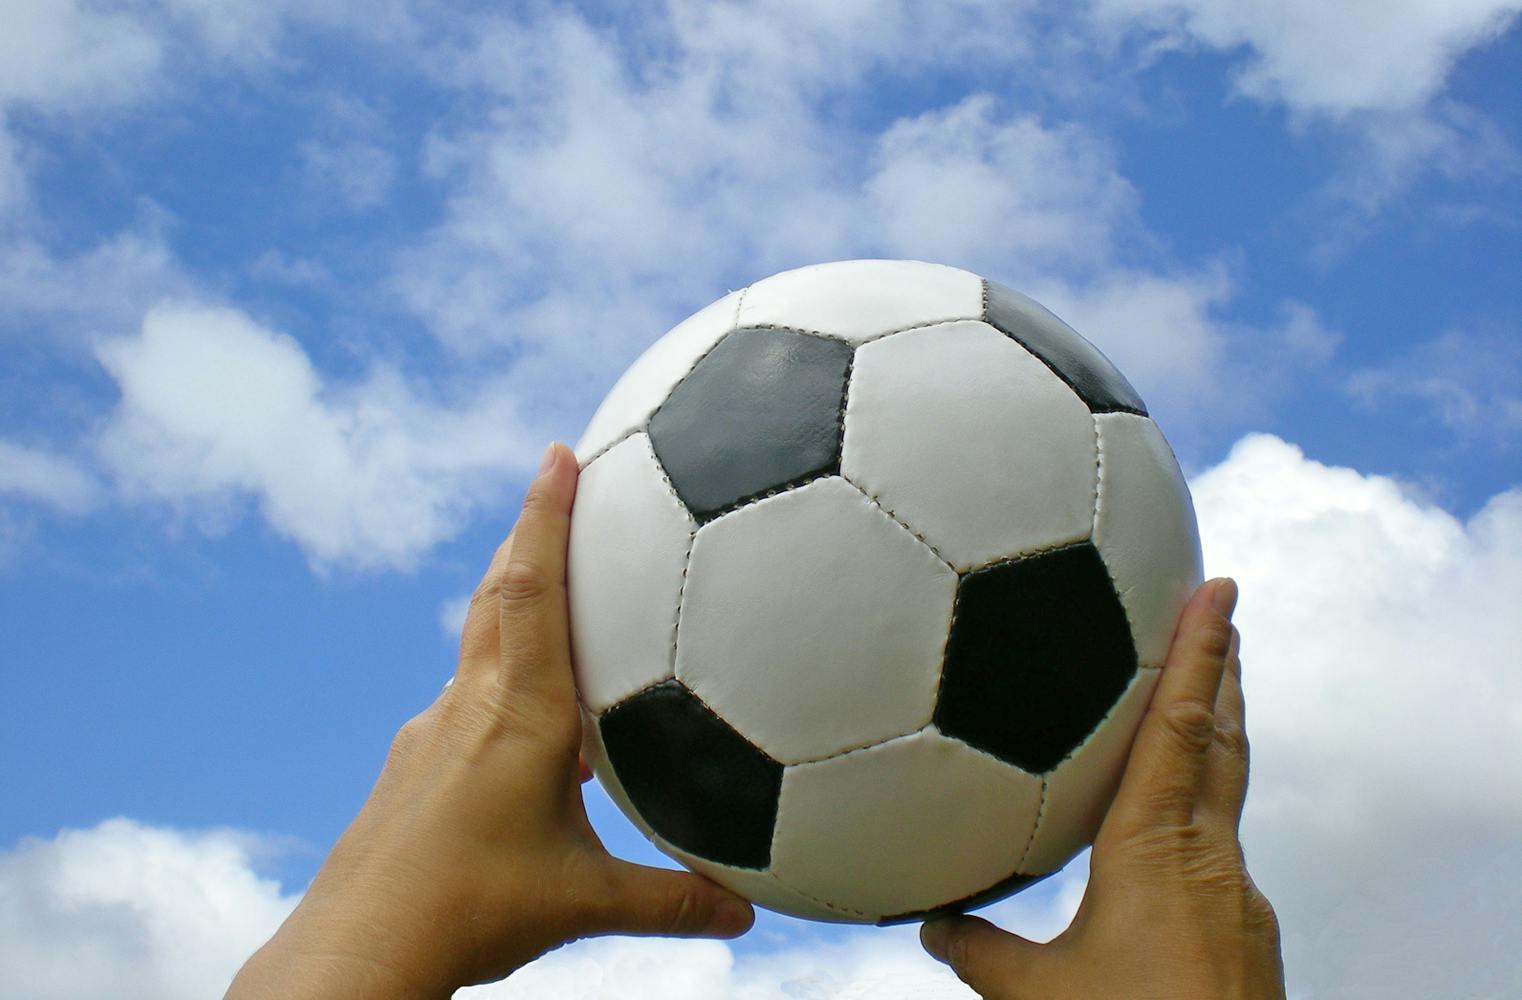 Soccerdart | Fußball spielen auf riesige Dartscheibe | 1 Std